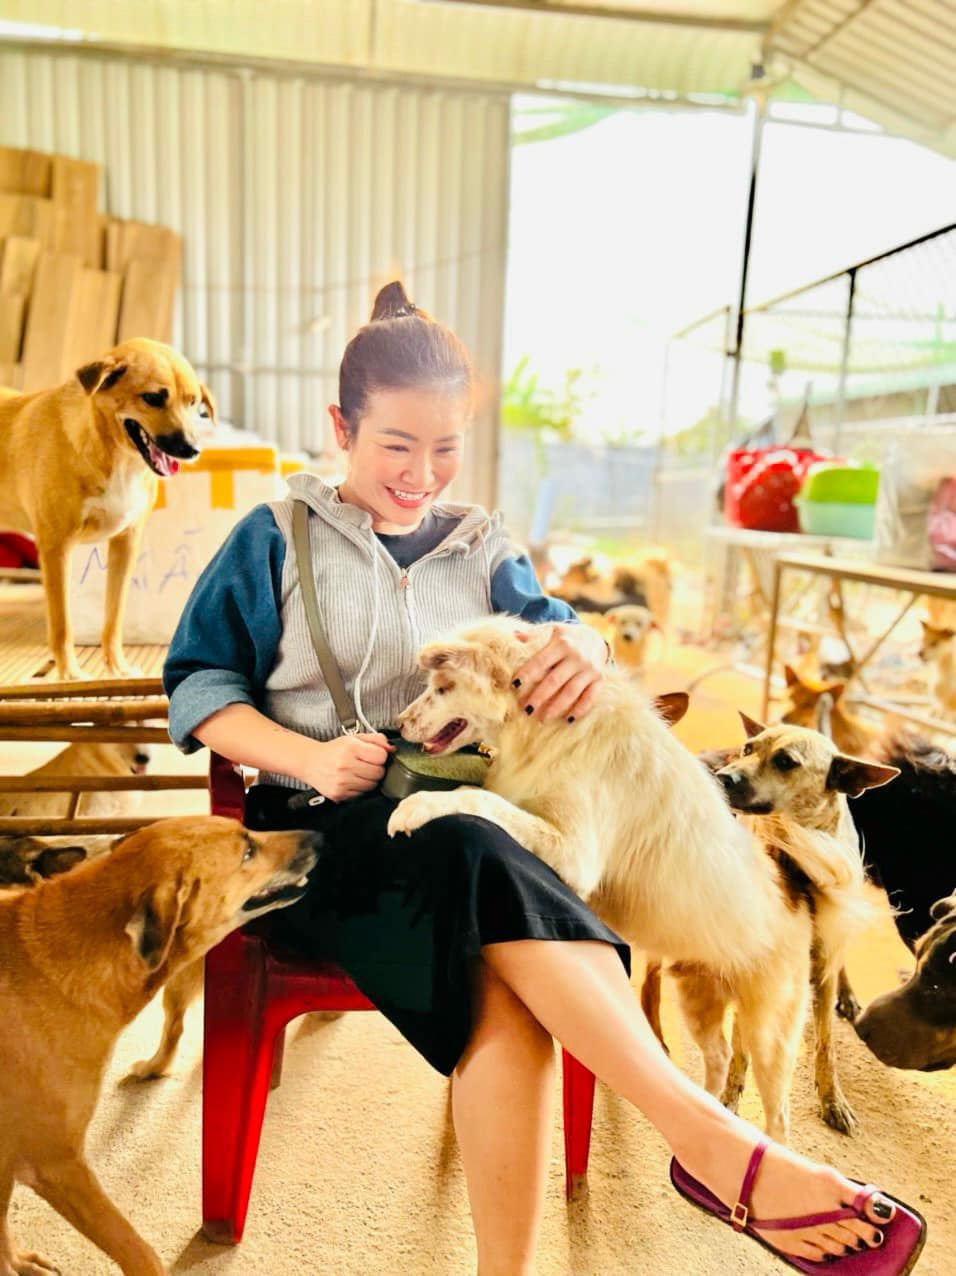 Kiều Linh chăm chỉ làm việc để có thu nhập lo cho 400 chú chó. Ảnh: Facebook nhân vật.